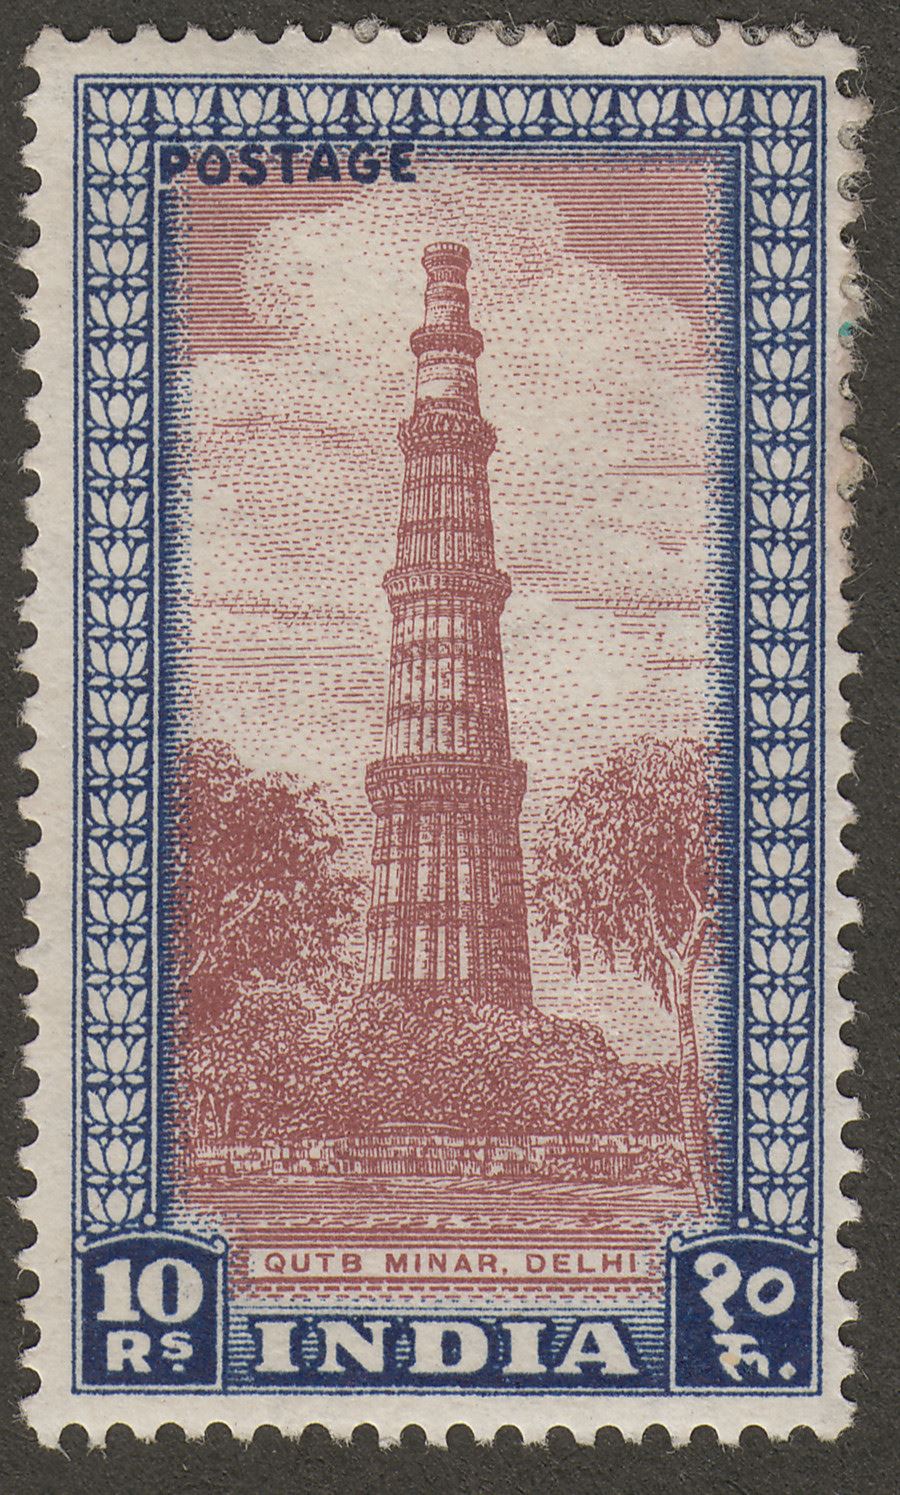 India 1949 Qutb Minar 10r P-Brown + Deep Blue Mint SG323 cat £160 heavy adhesion